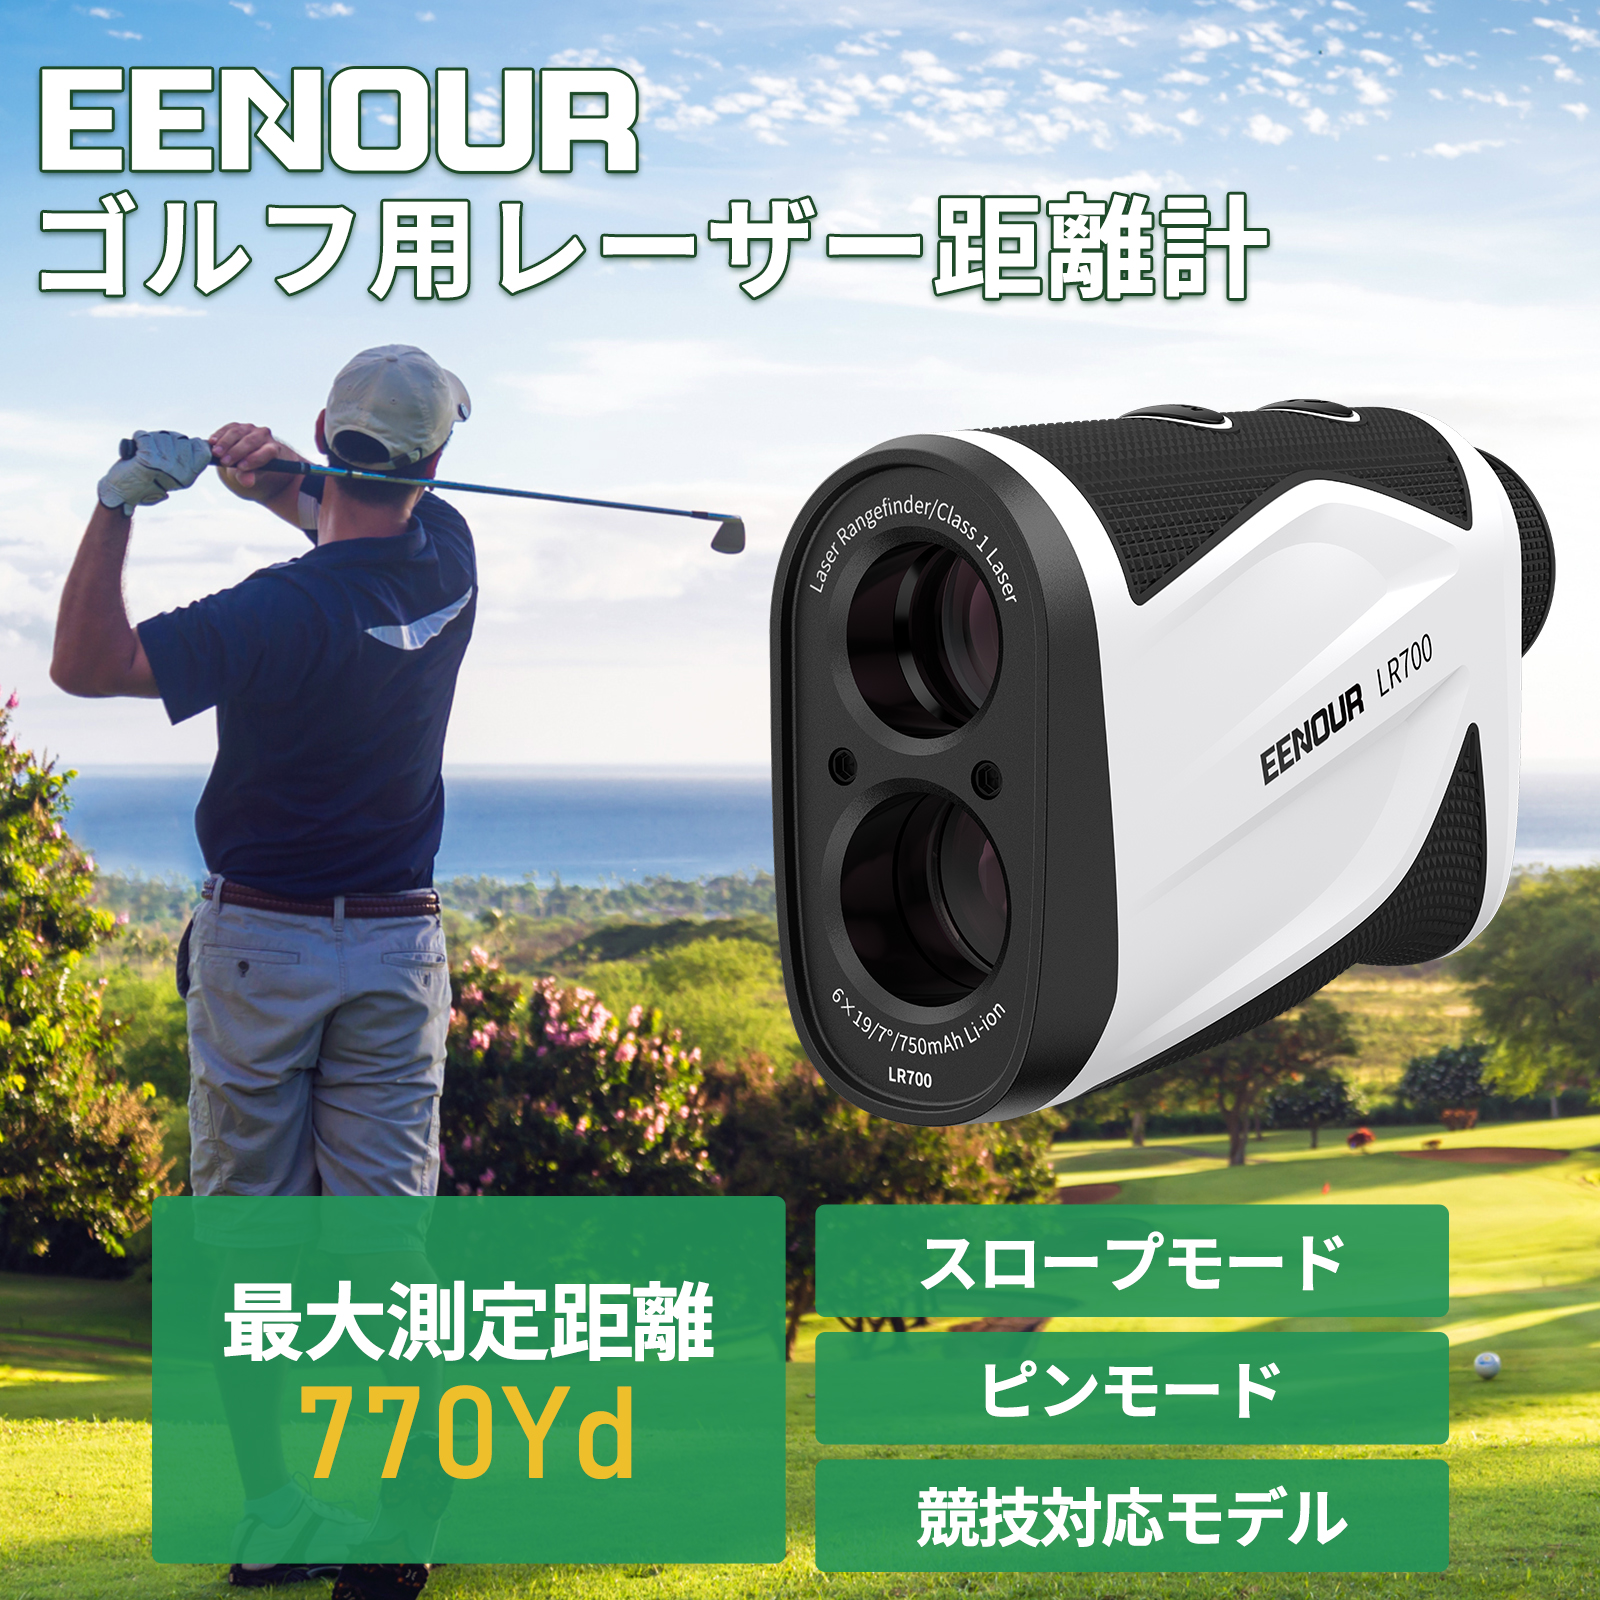 公式サイト EENOUR公式 Yahoo ショップ セール 15日まで9990円 ゴルフ